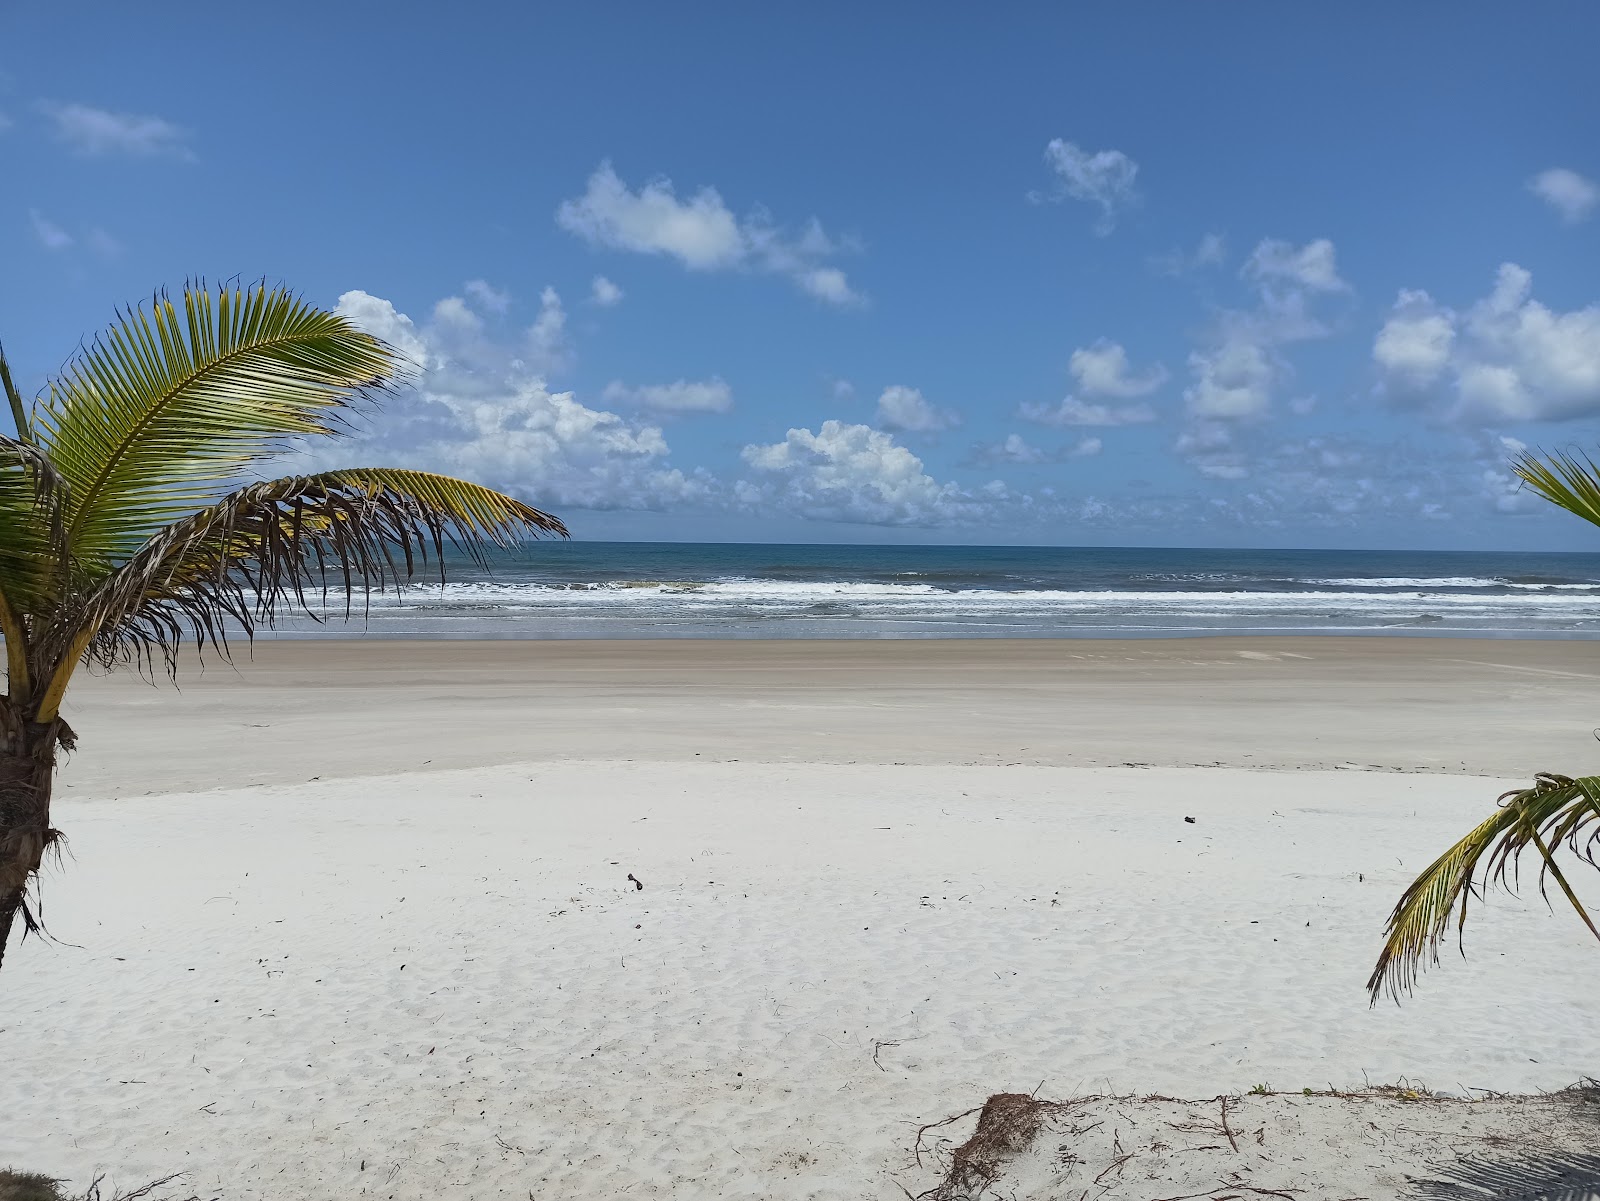 Praia de Acuipe'in fotoğrafı çok temiz temizlik seviyesi ile